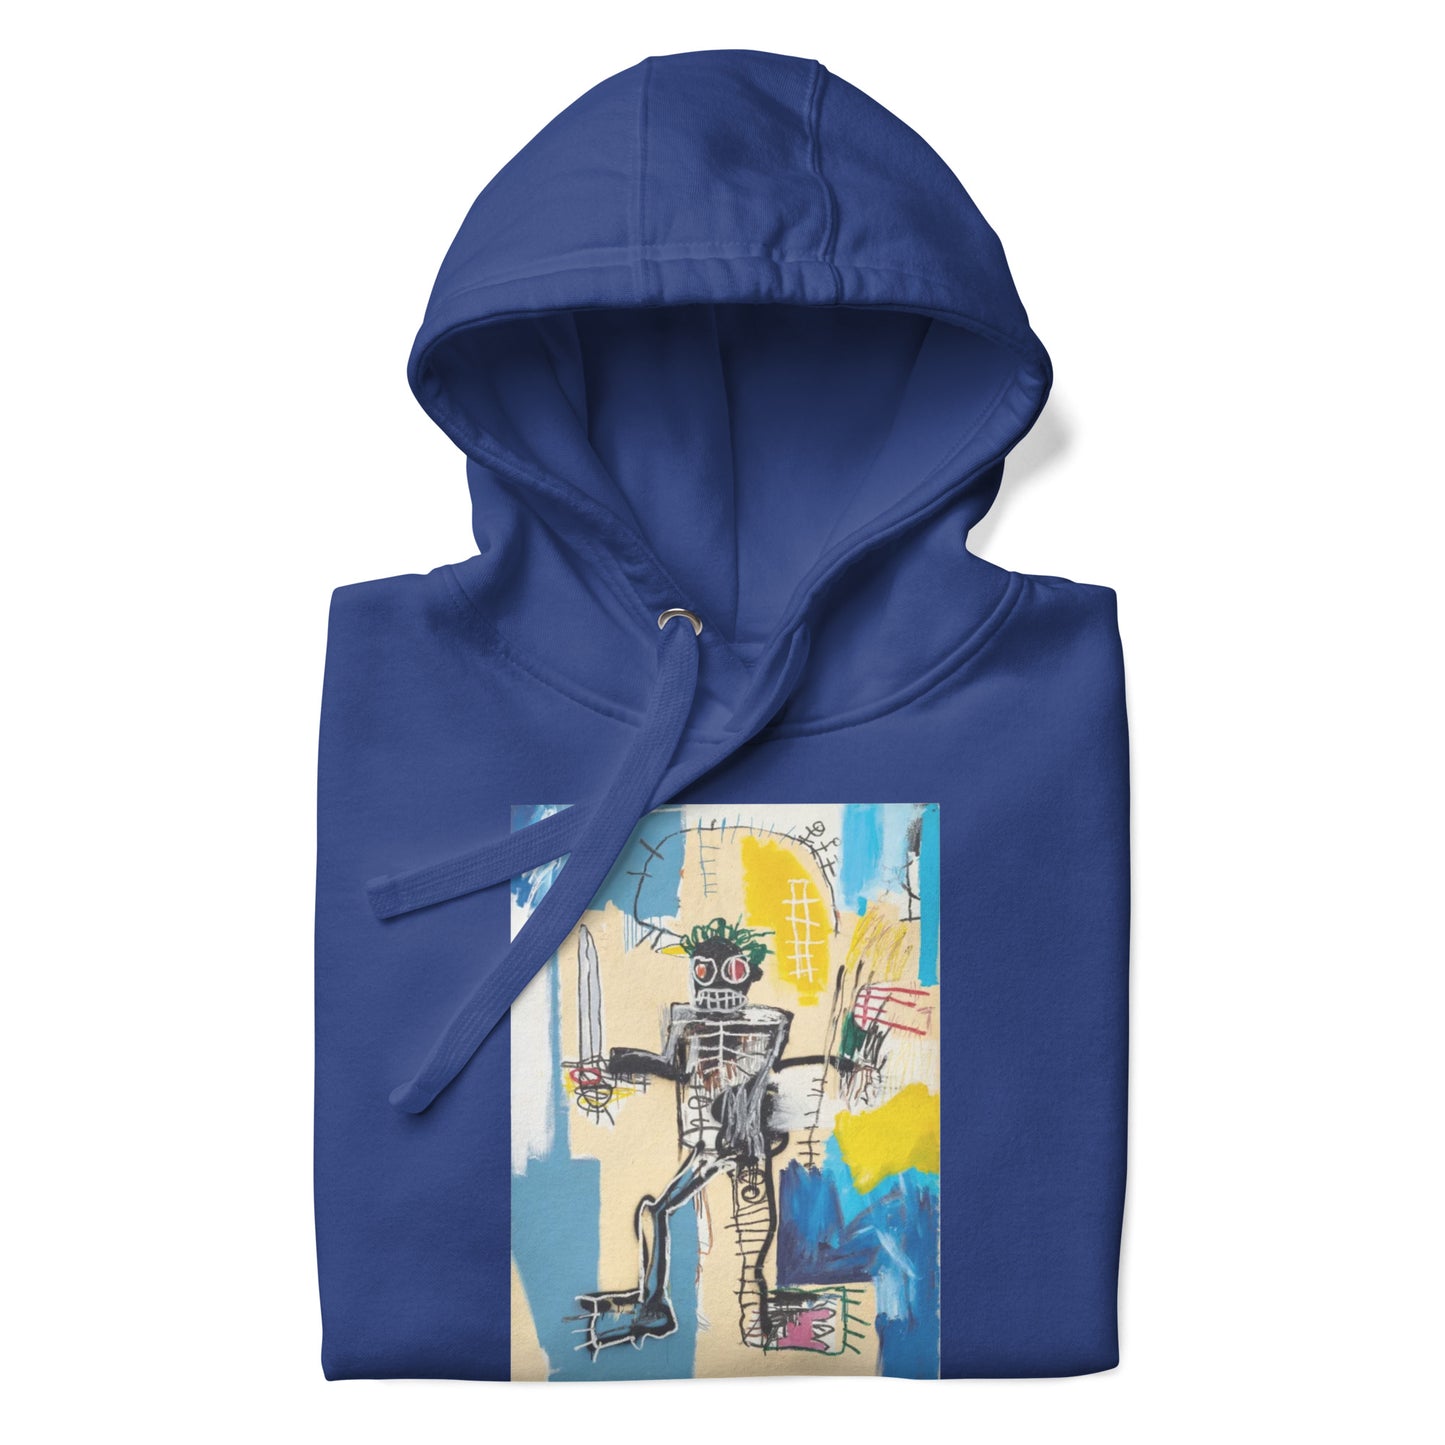 Jean-Michel Basquiat "Warrior" Artwork Printed Premium Streetwear Sweatshirt Hoodie Royal Blue